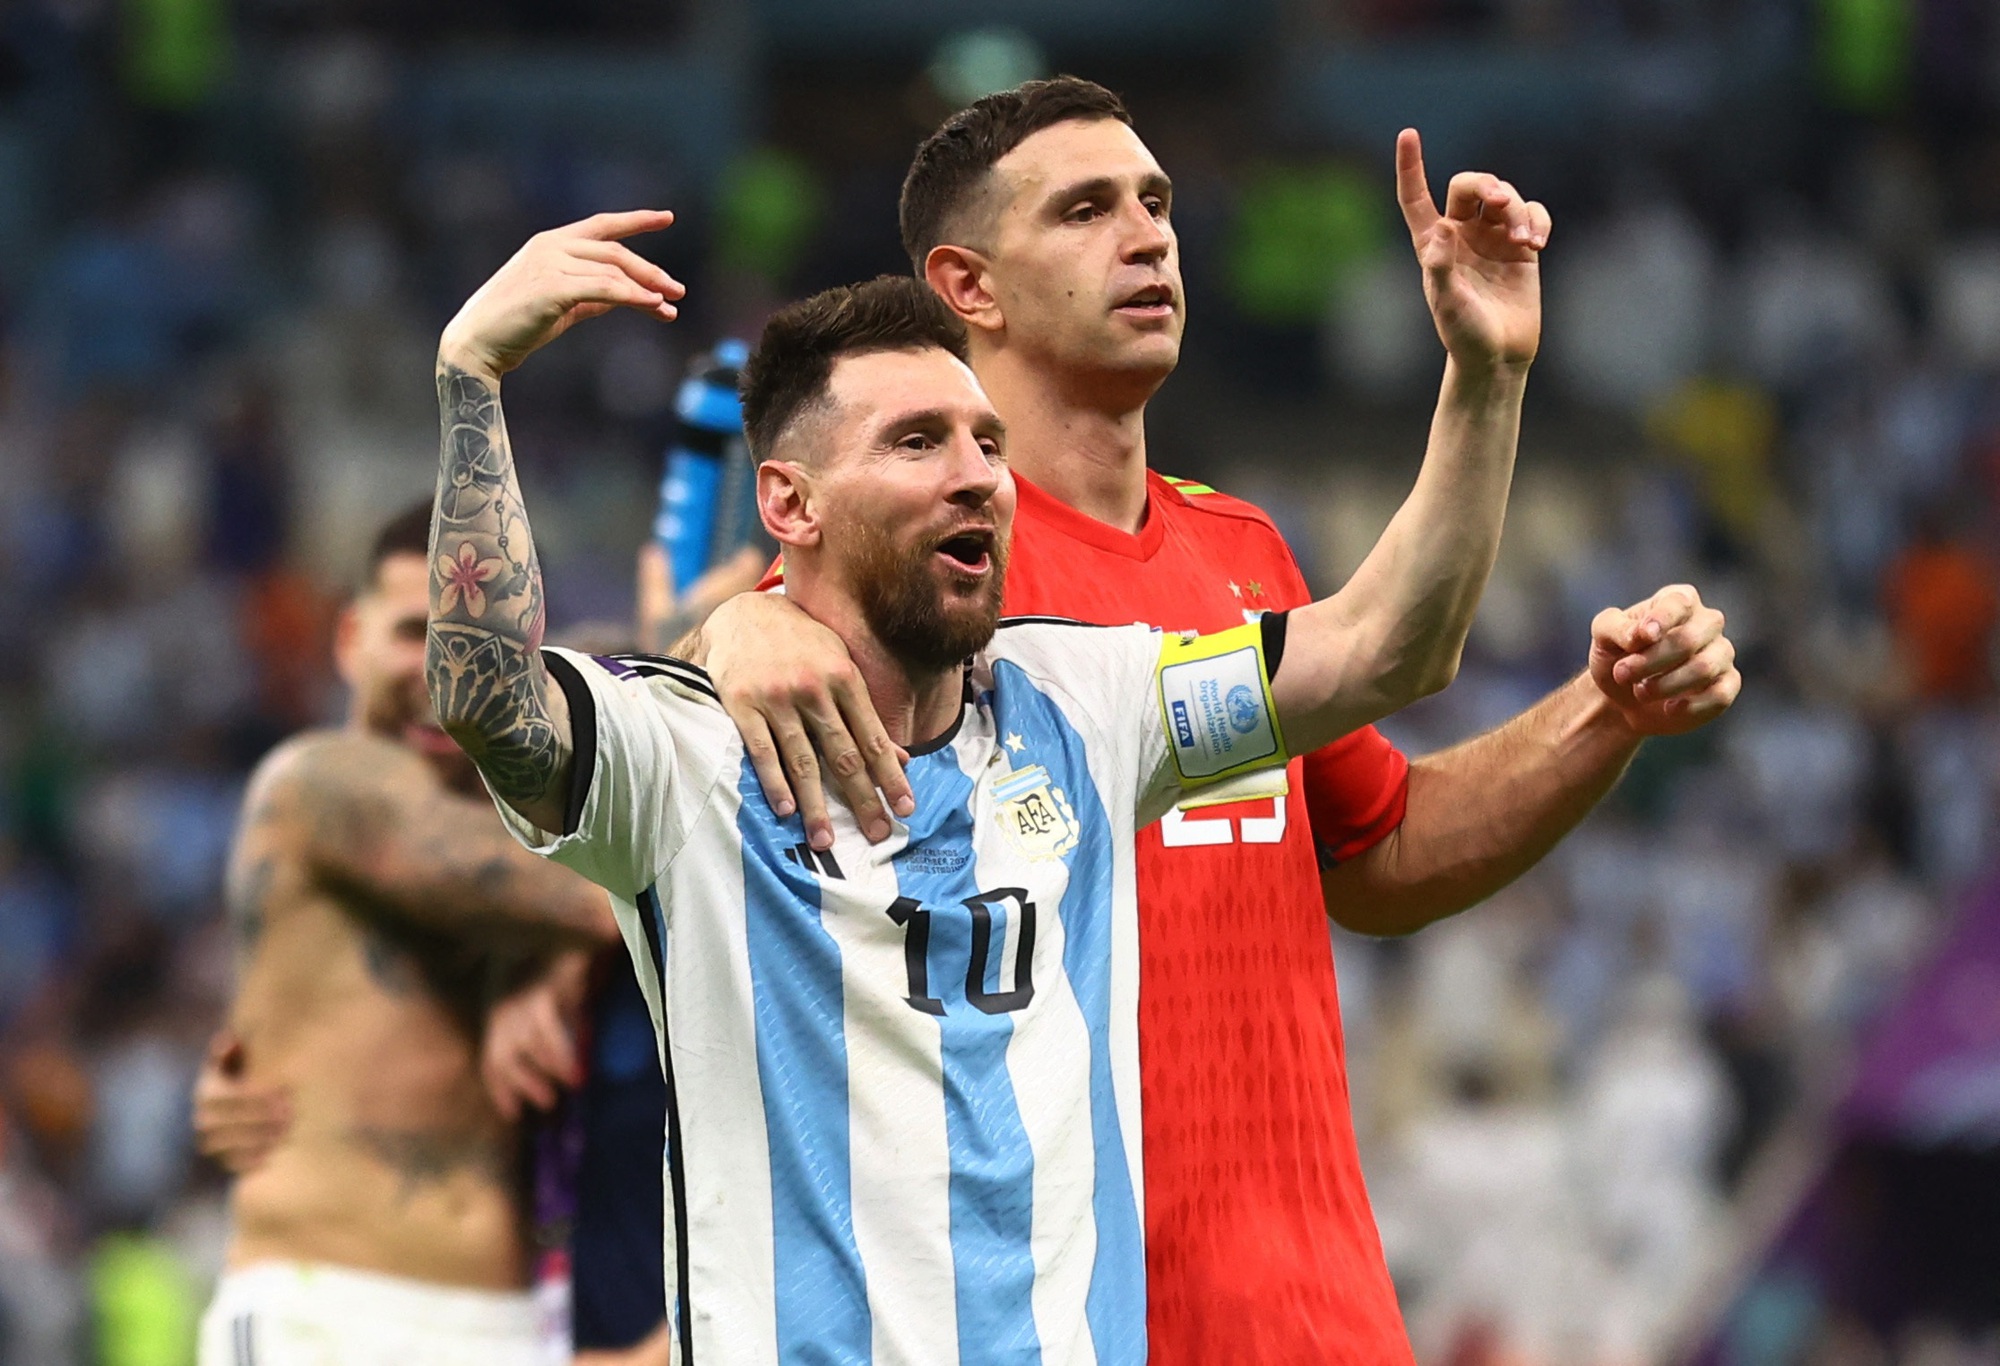 Đối với các fan hâm mộ bóng đá, điều đầu tiên mà họ nghĩ đến khi nhắc đến Argentina là Messi. Hãy cùng thưởng thức các bức ảnh của Messi trong đội tuyển Argentina và bạn sẽ ngập tràn cảm xúc. Bạn sẽ được hòa mình vào cuộc đua của đội tuyển này trong các giải đấu quan trọng.